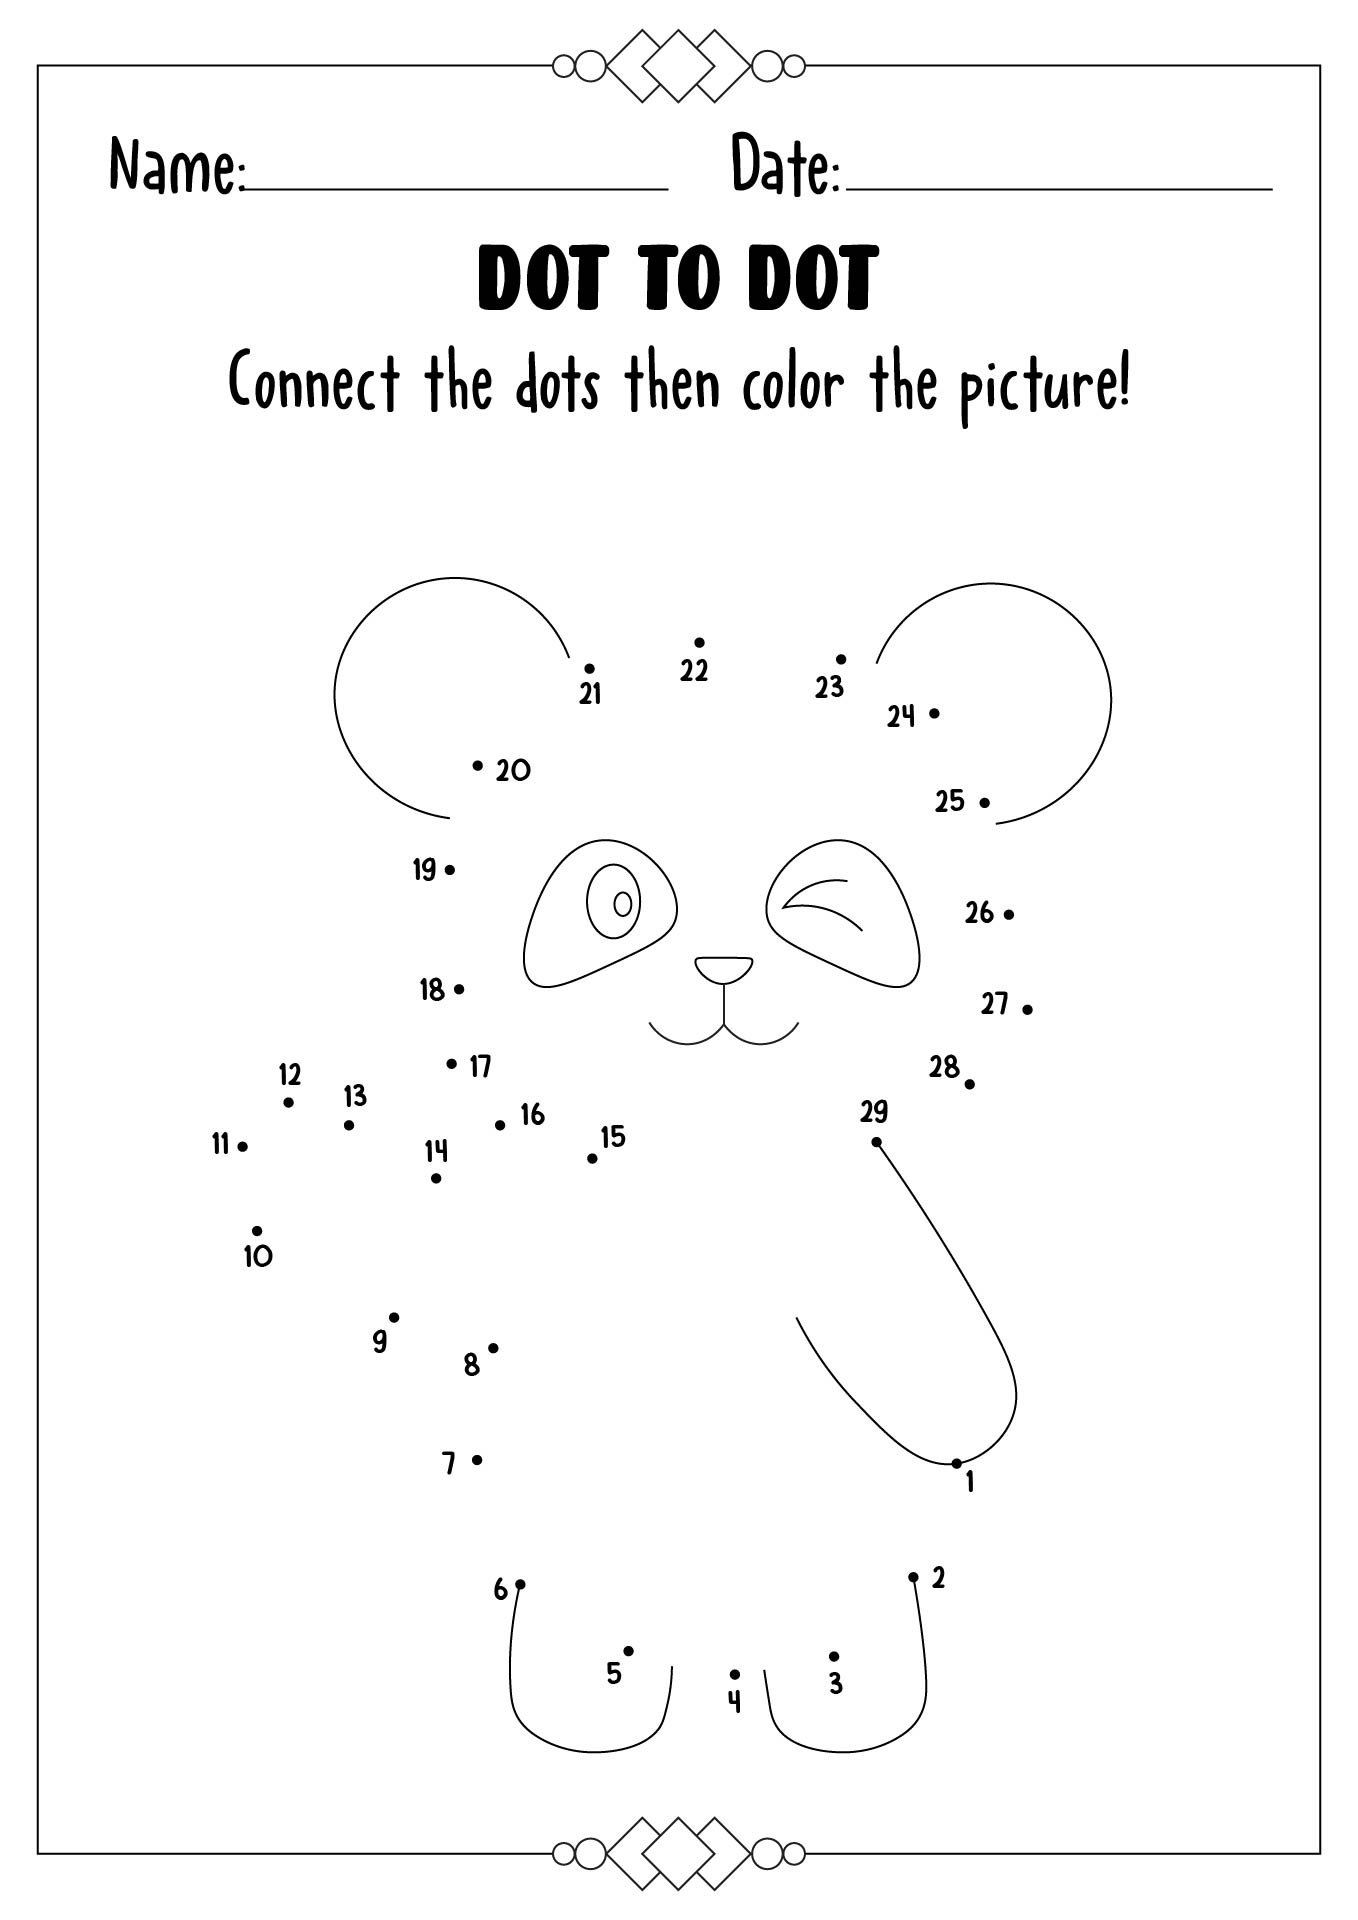 Free Kids Dot to Dot Printables Image